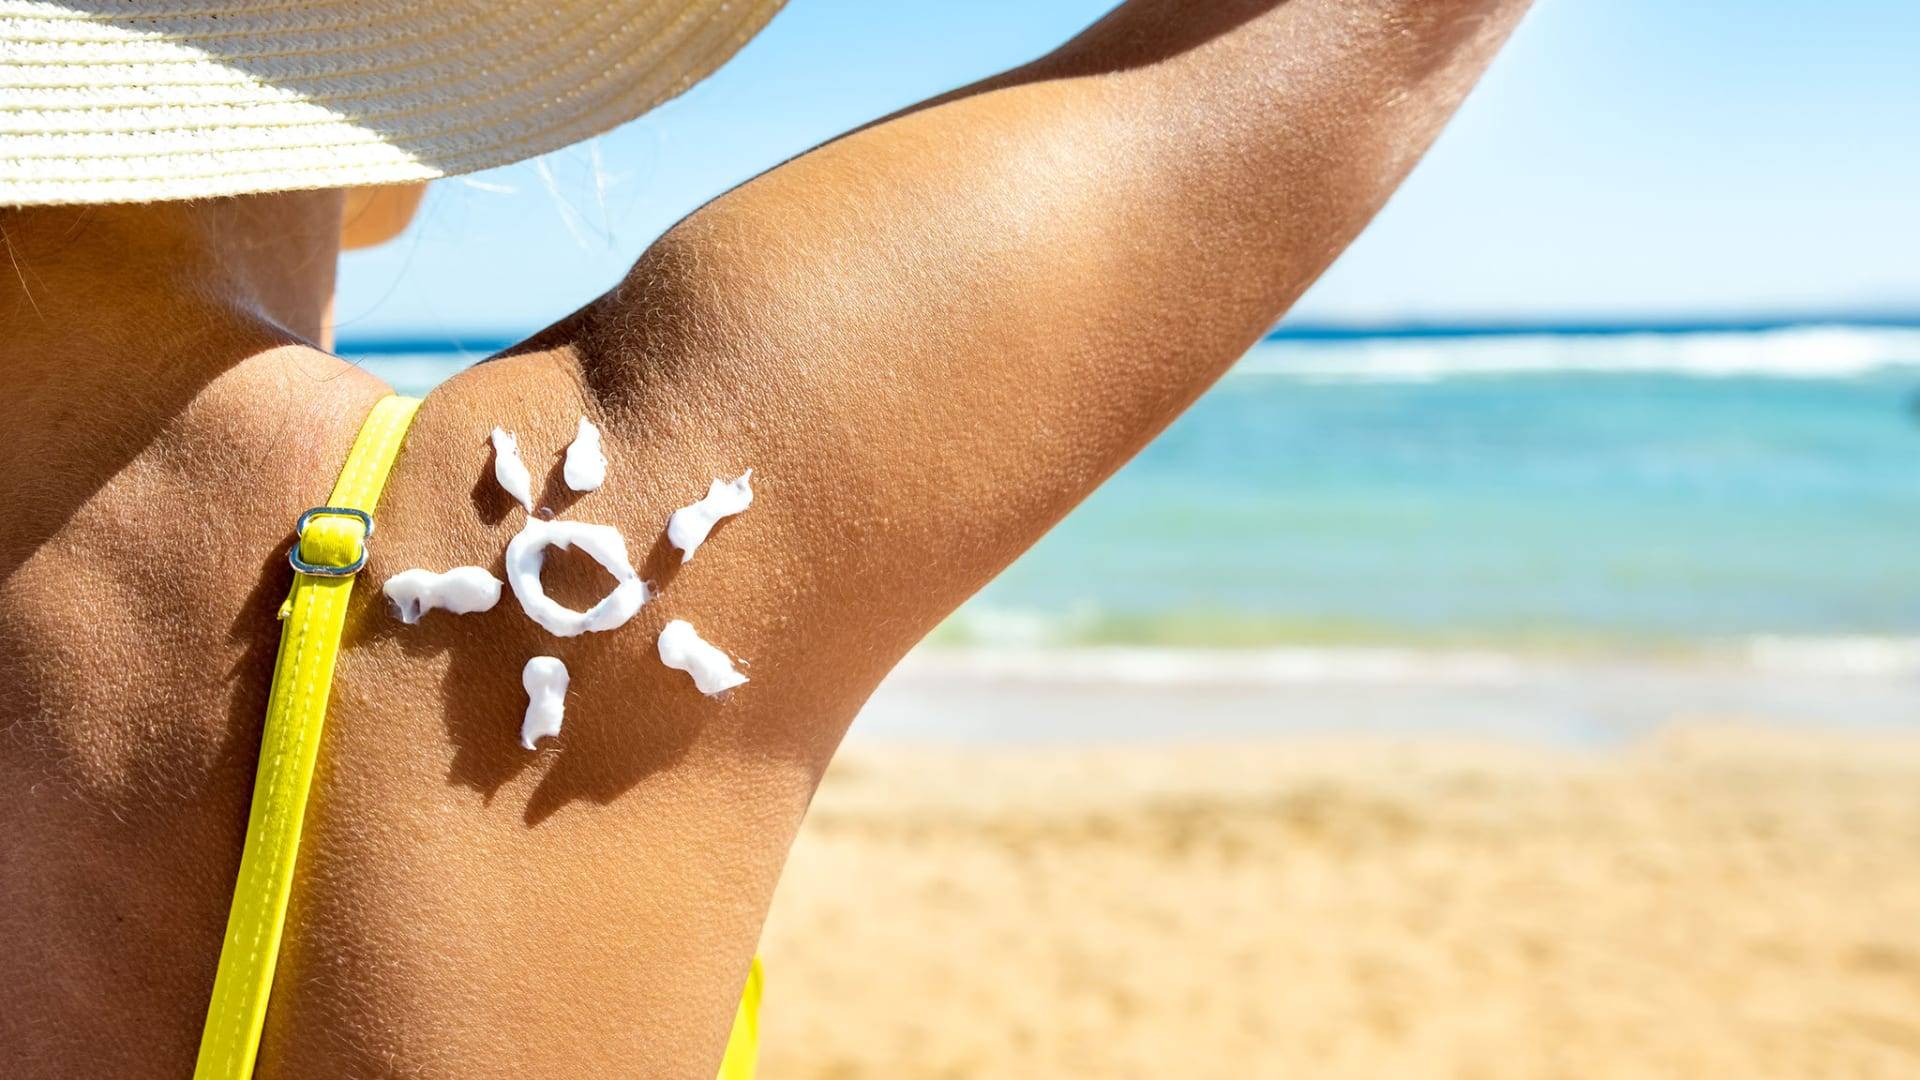 L'été rime avec soleil, mais aussi risques pour notre peau. Découvrez comment protéger efficacement votre peau des rayons UV cet été.